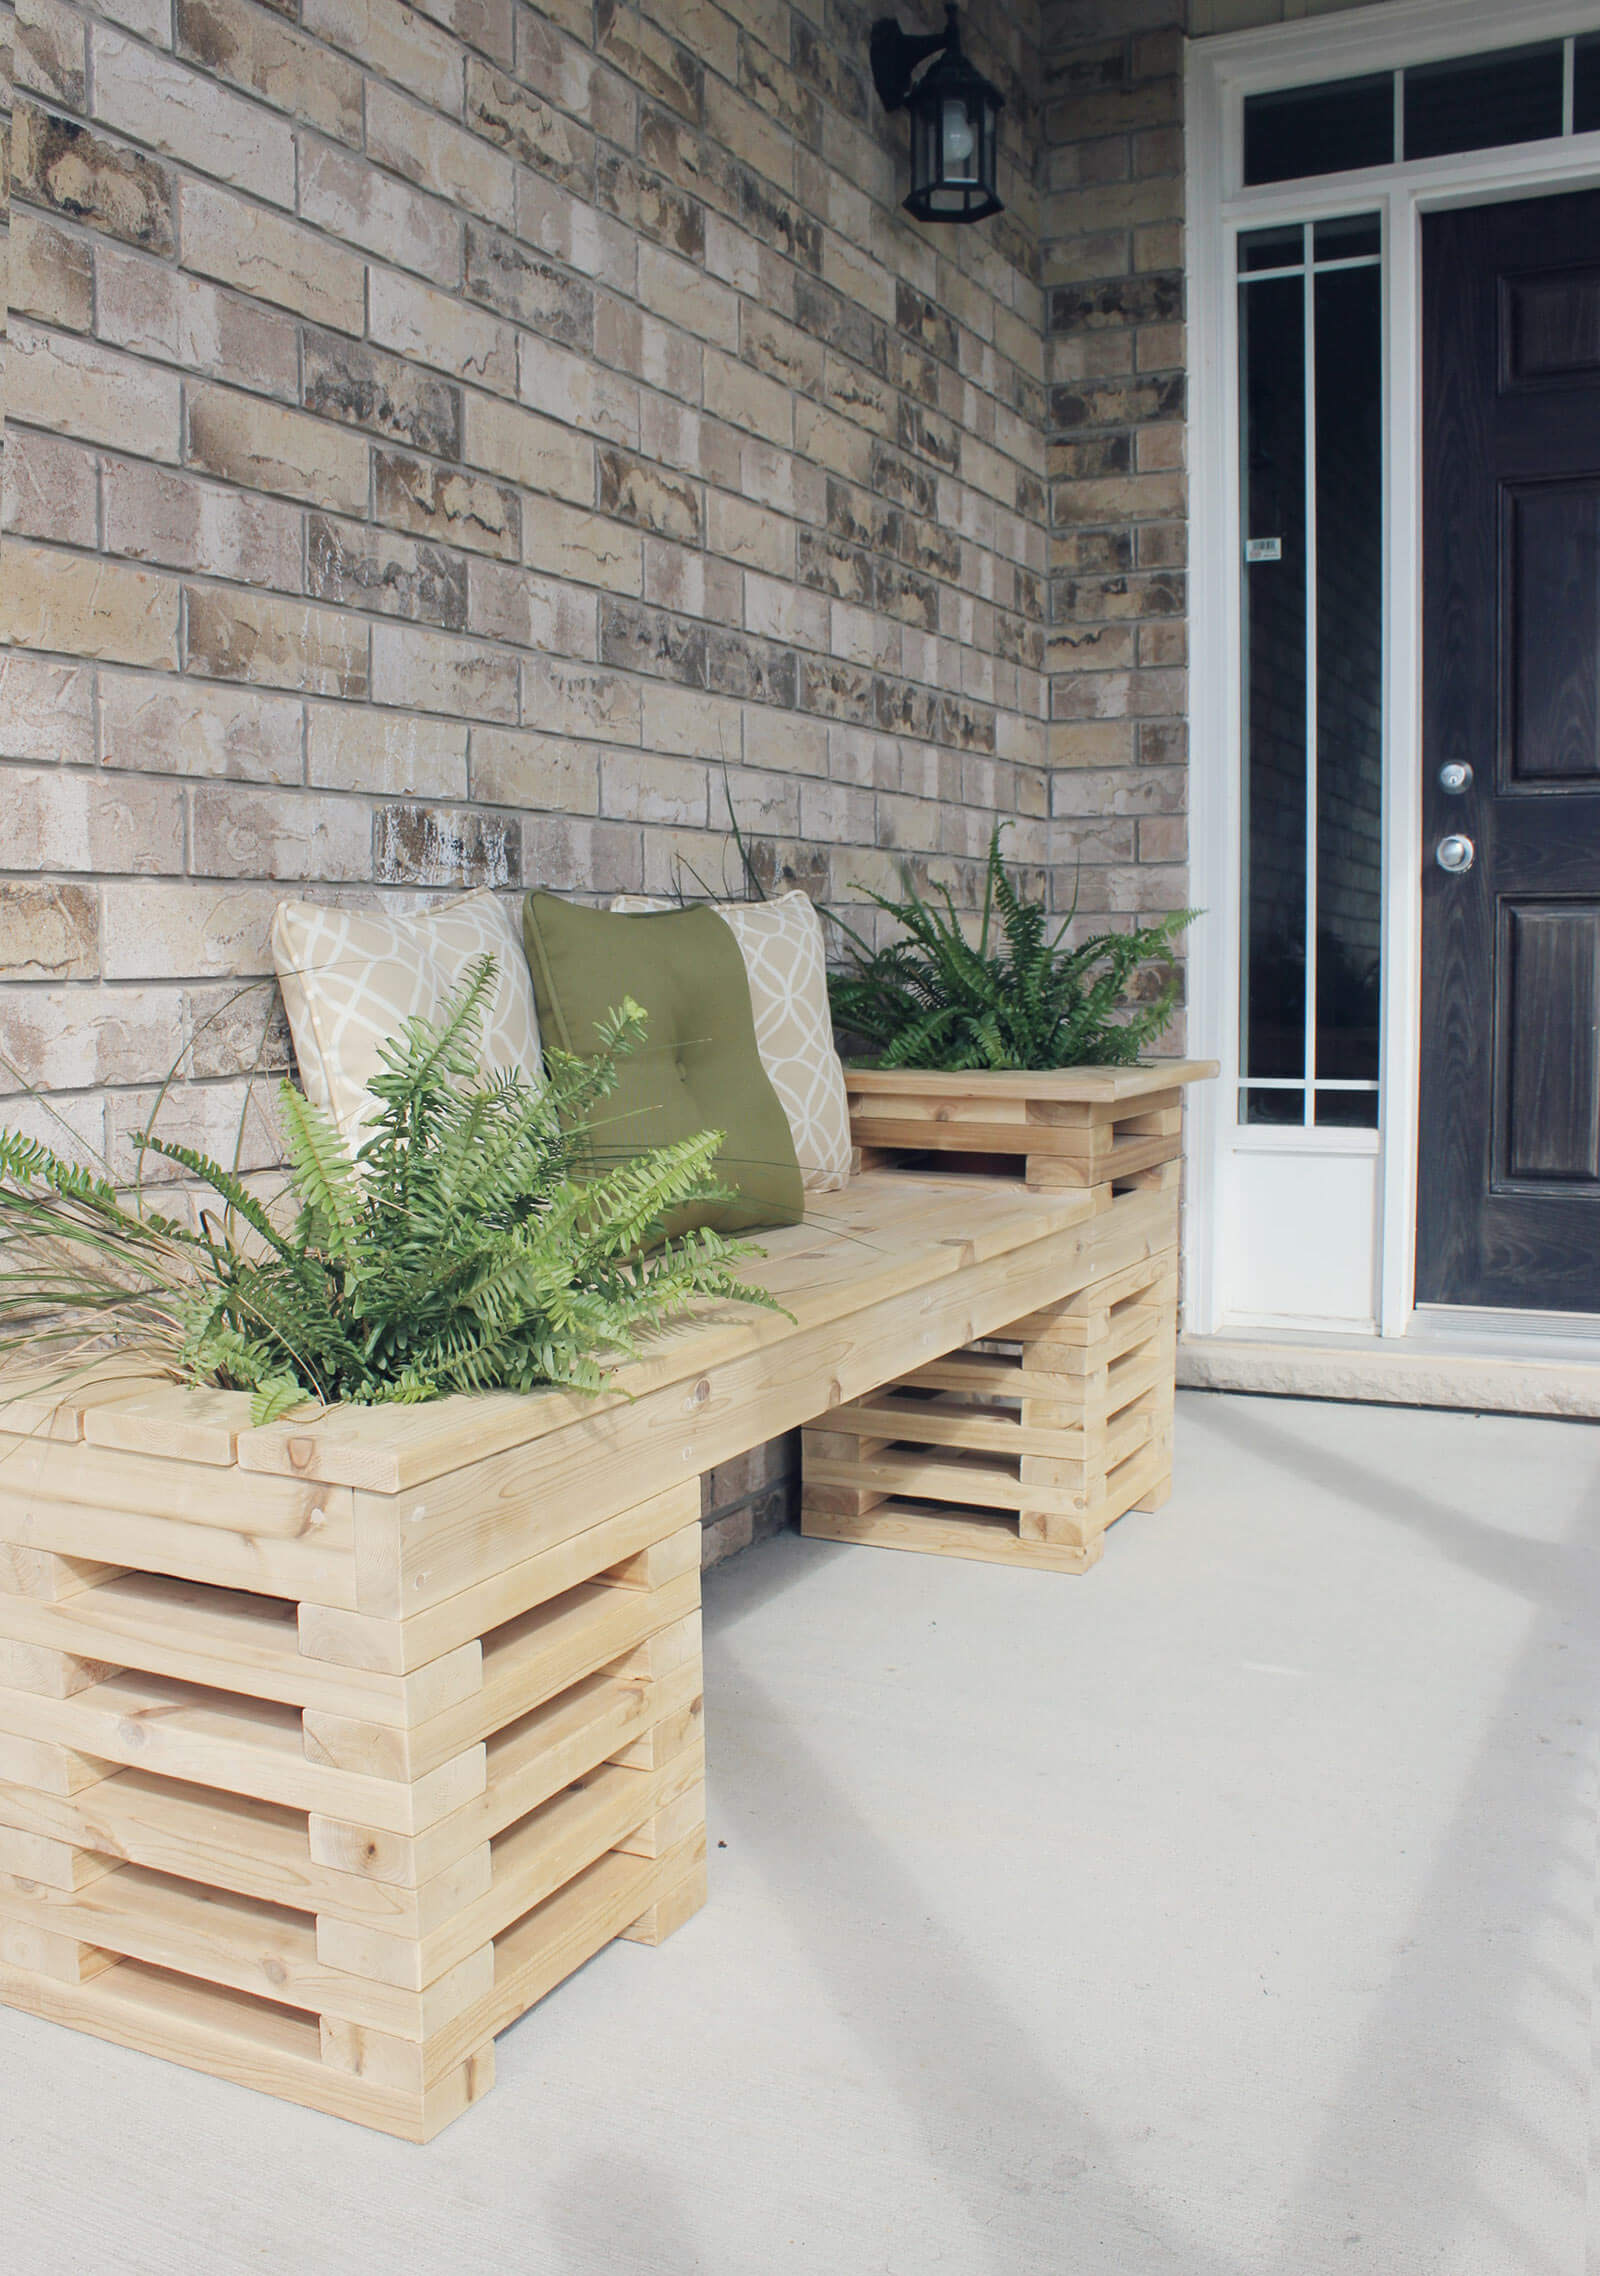 Outdoor DIY Bench Ideas: Garden-Box Happy Place Bench